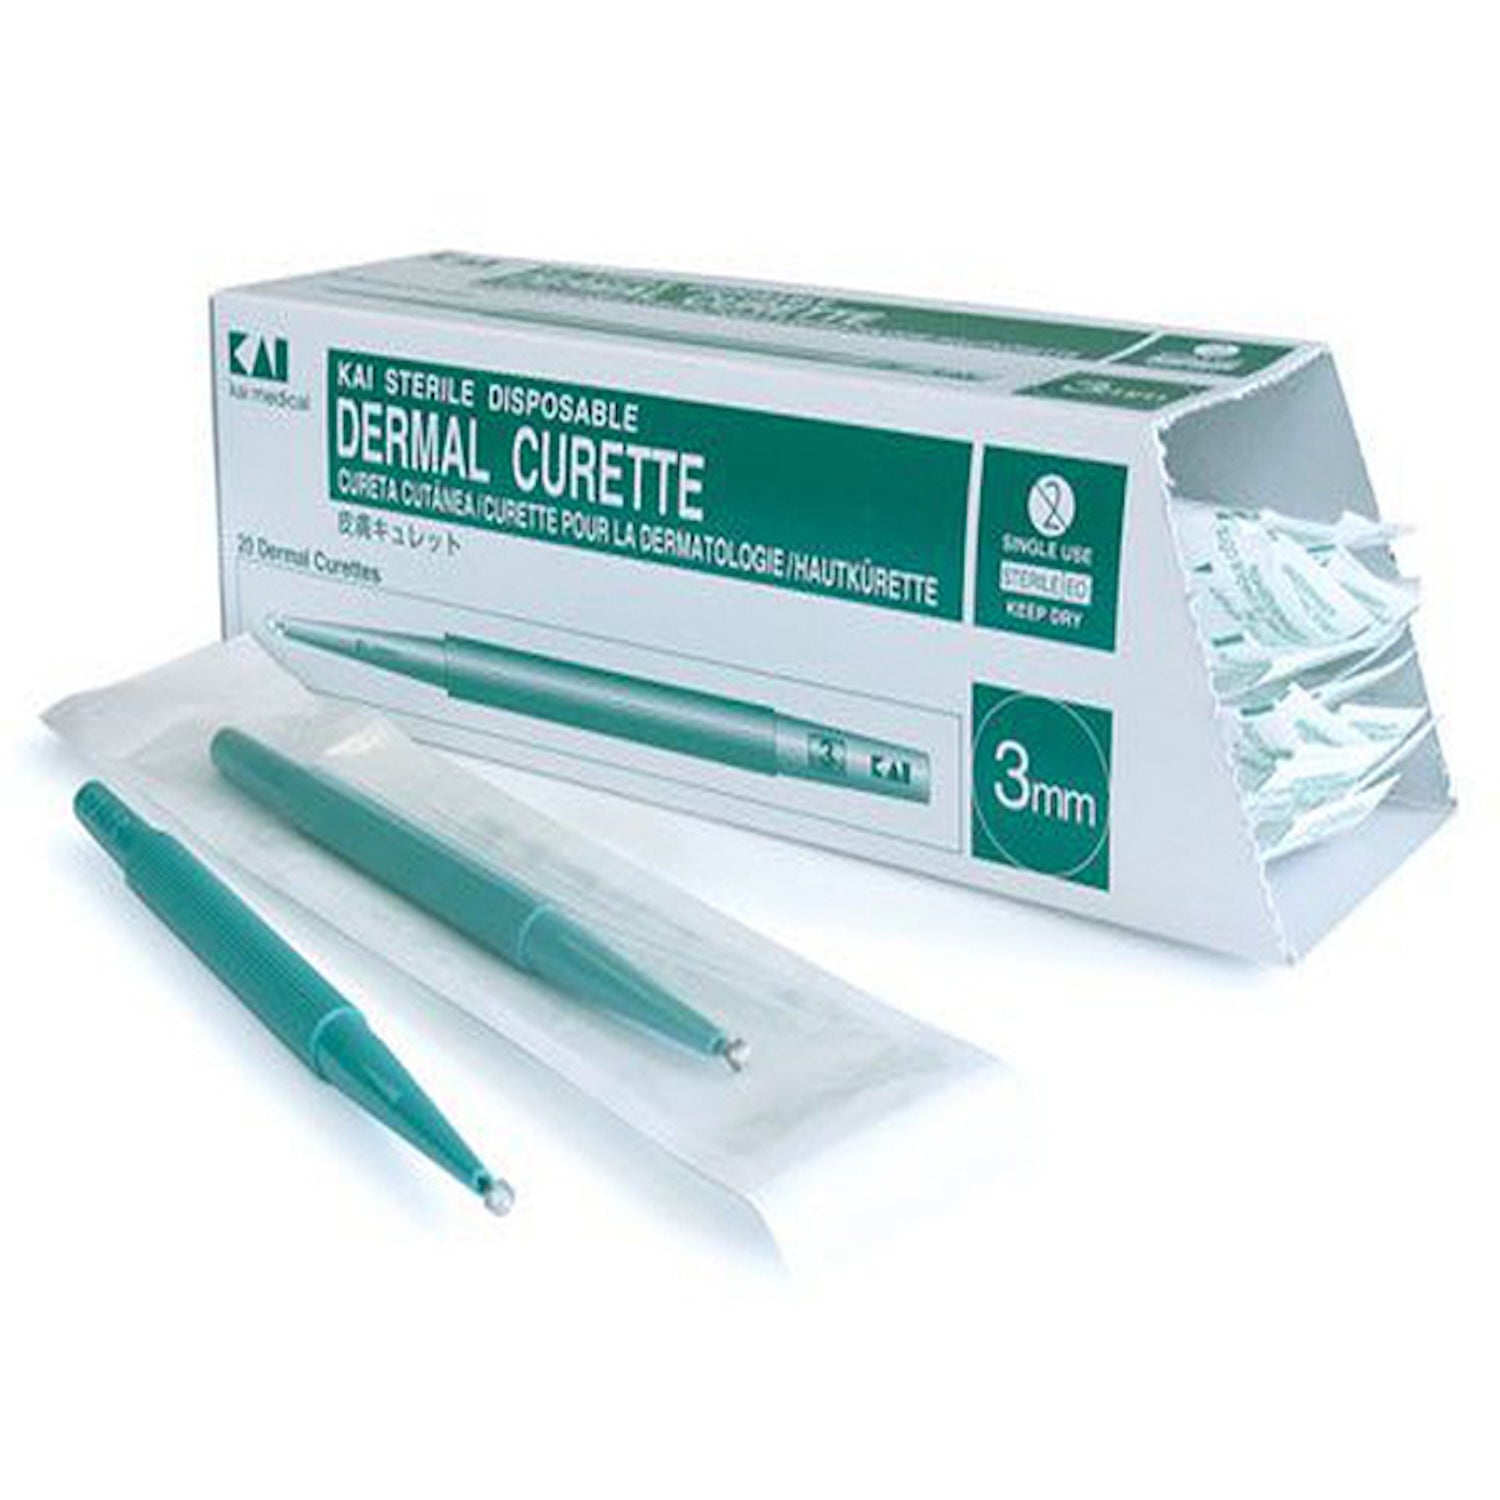 Kai Disposable Dermal Curettes | 3mm | Pack of 20 (1)